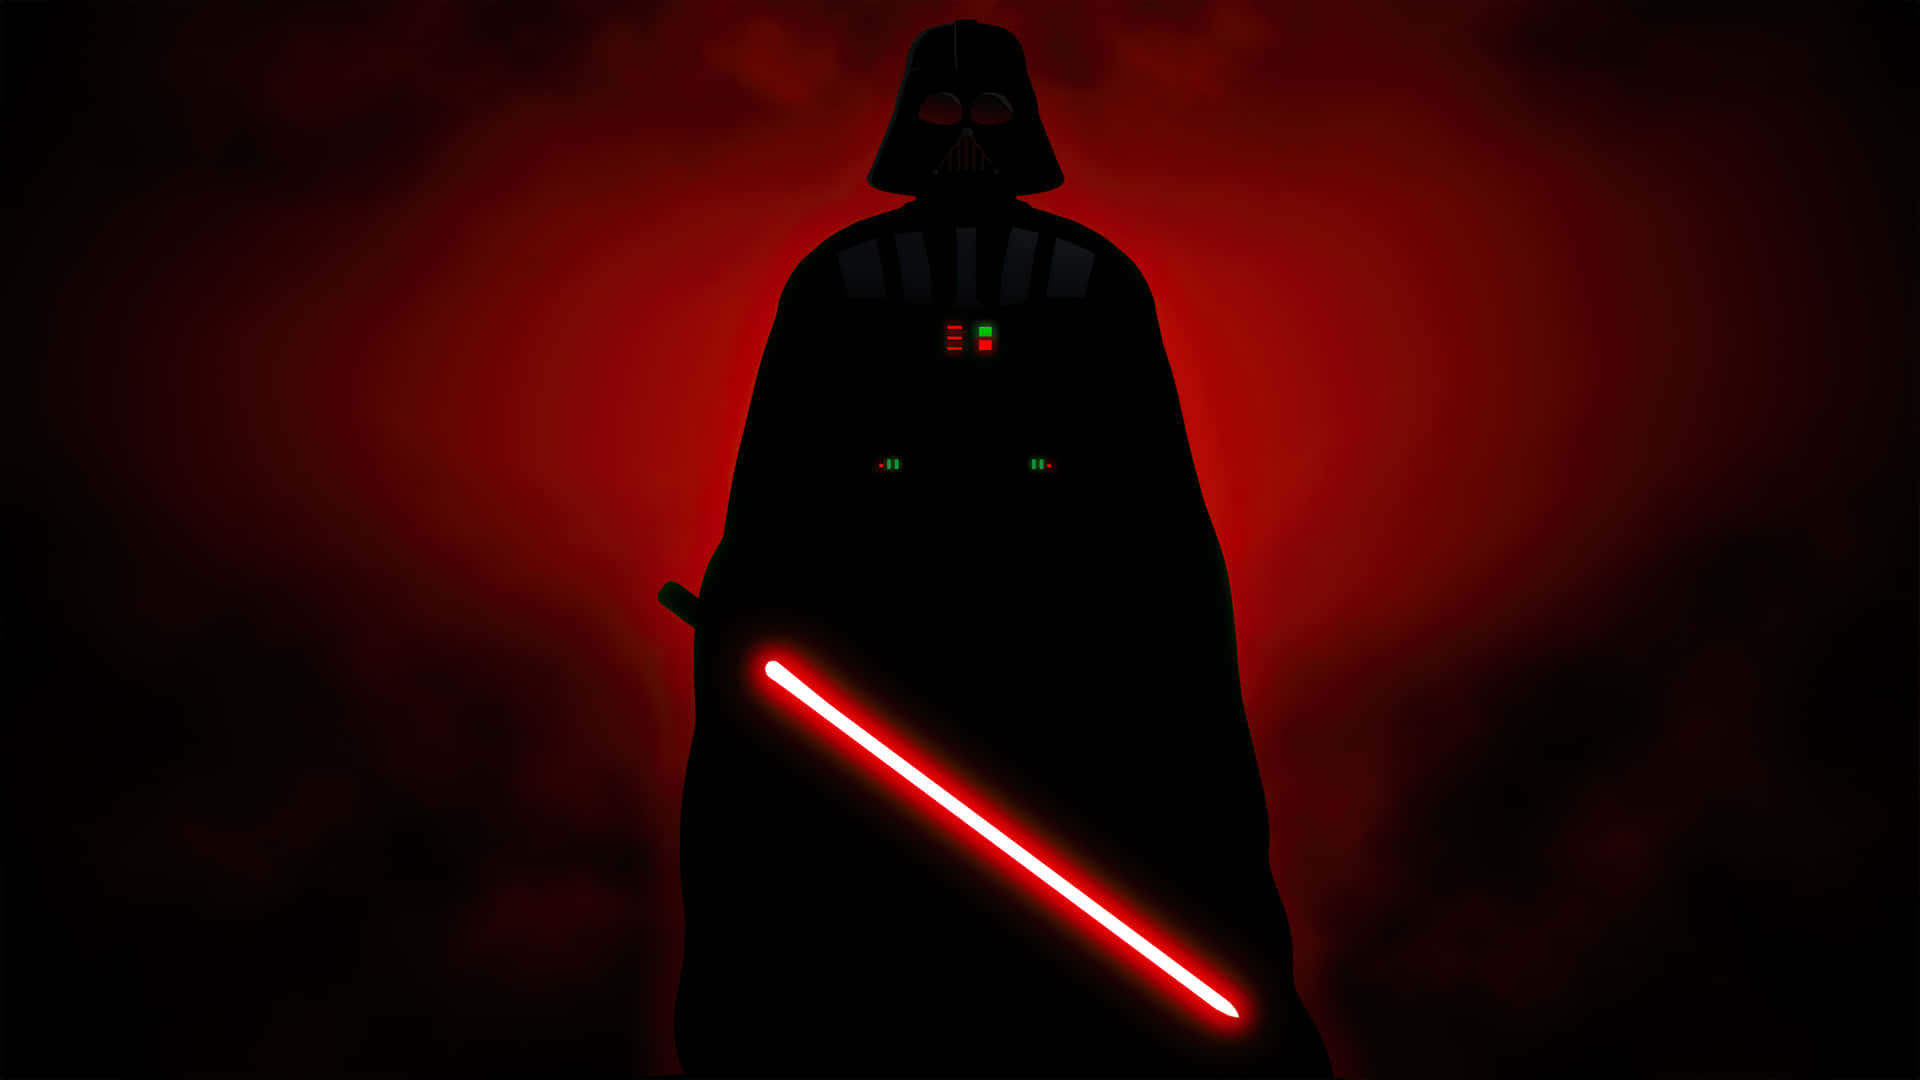 Darth Vader Red Backdrop4 K Wallpaper